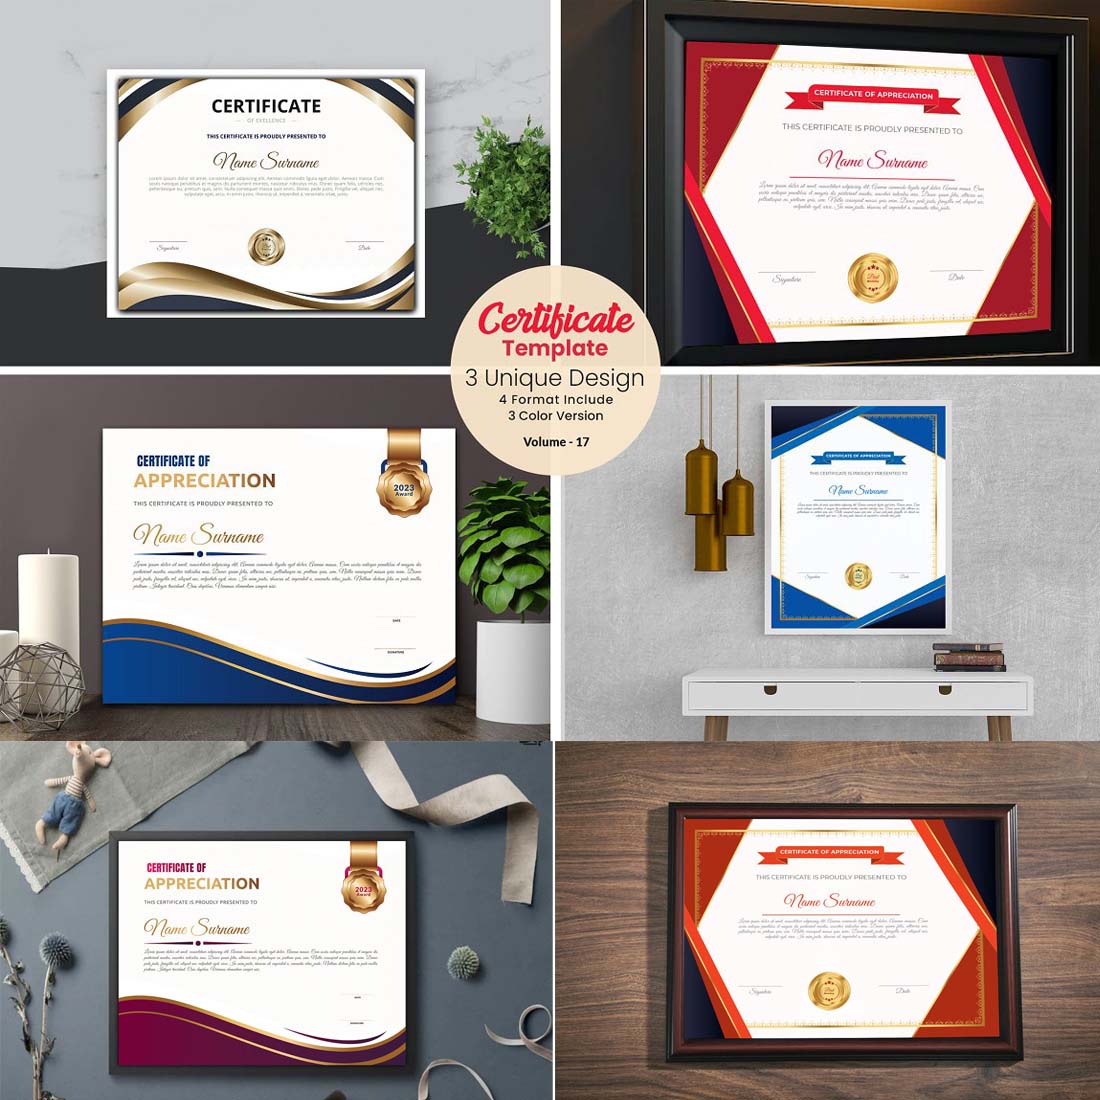 Elegant Diploma Certificate Template cover image.